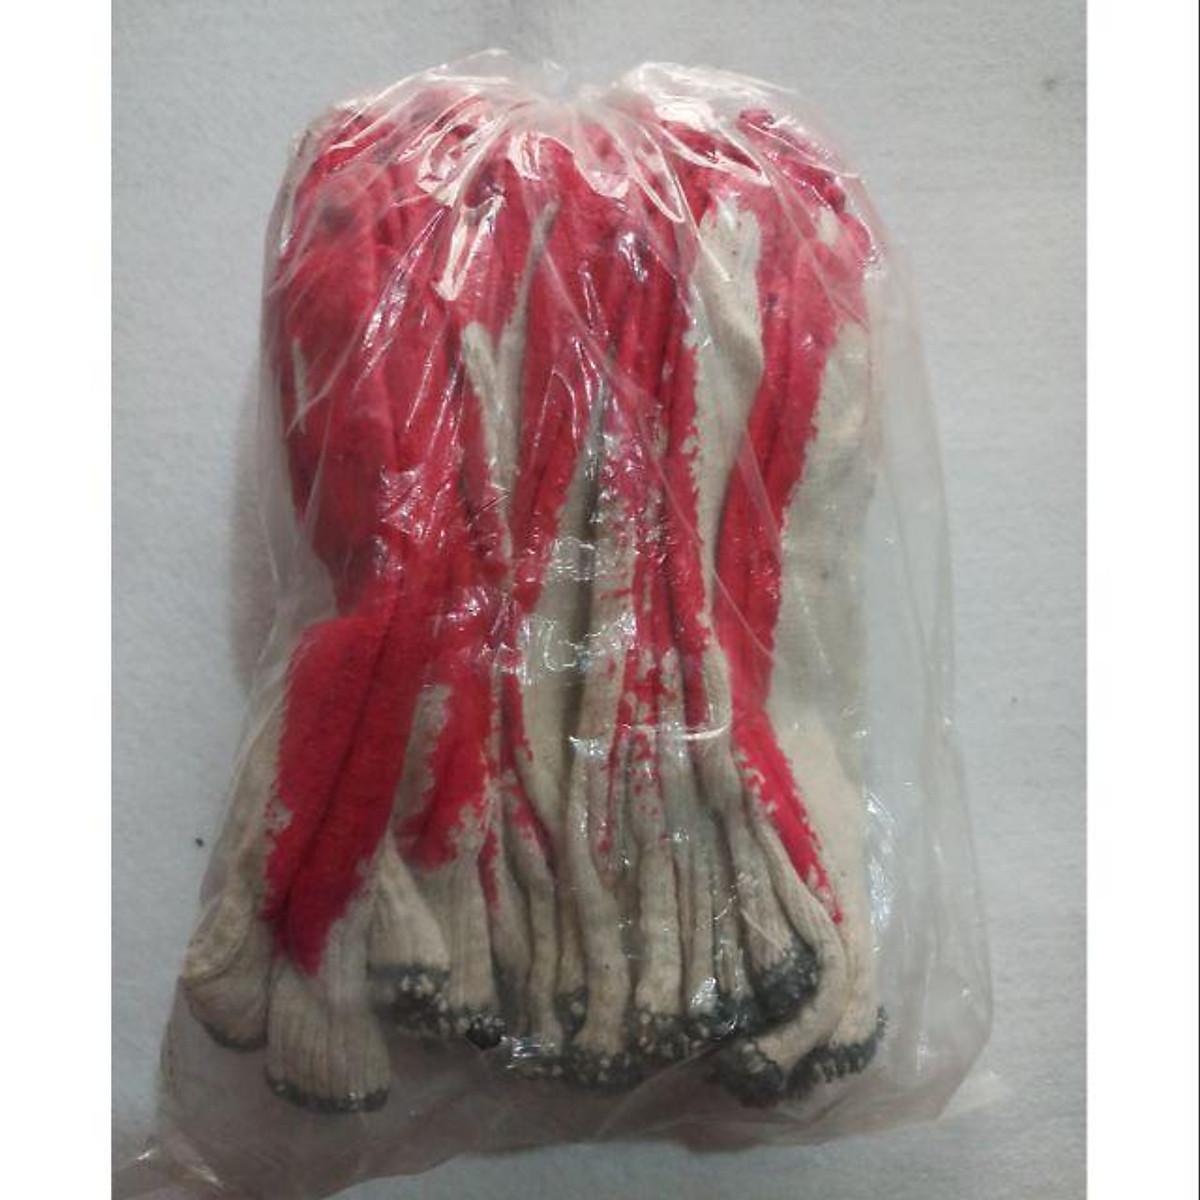 Găng tay sợi sơn đỏ sét bịch( 12 đôi)